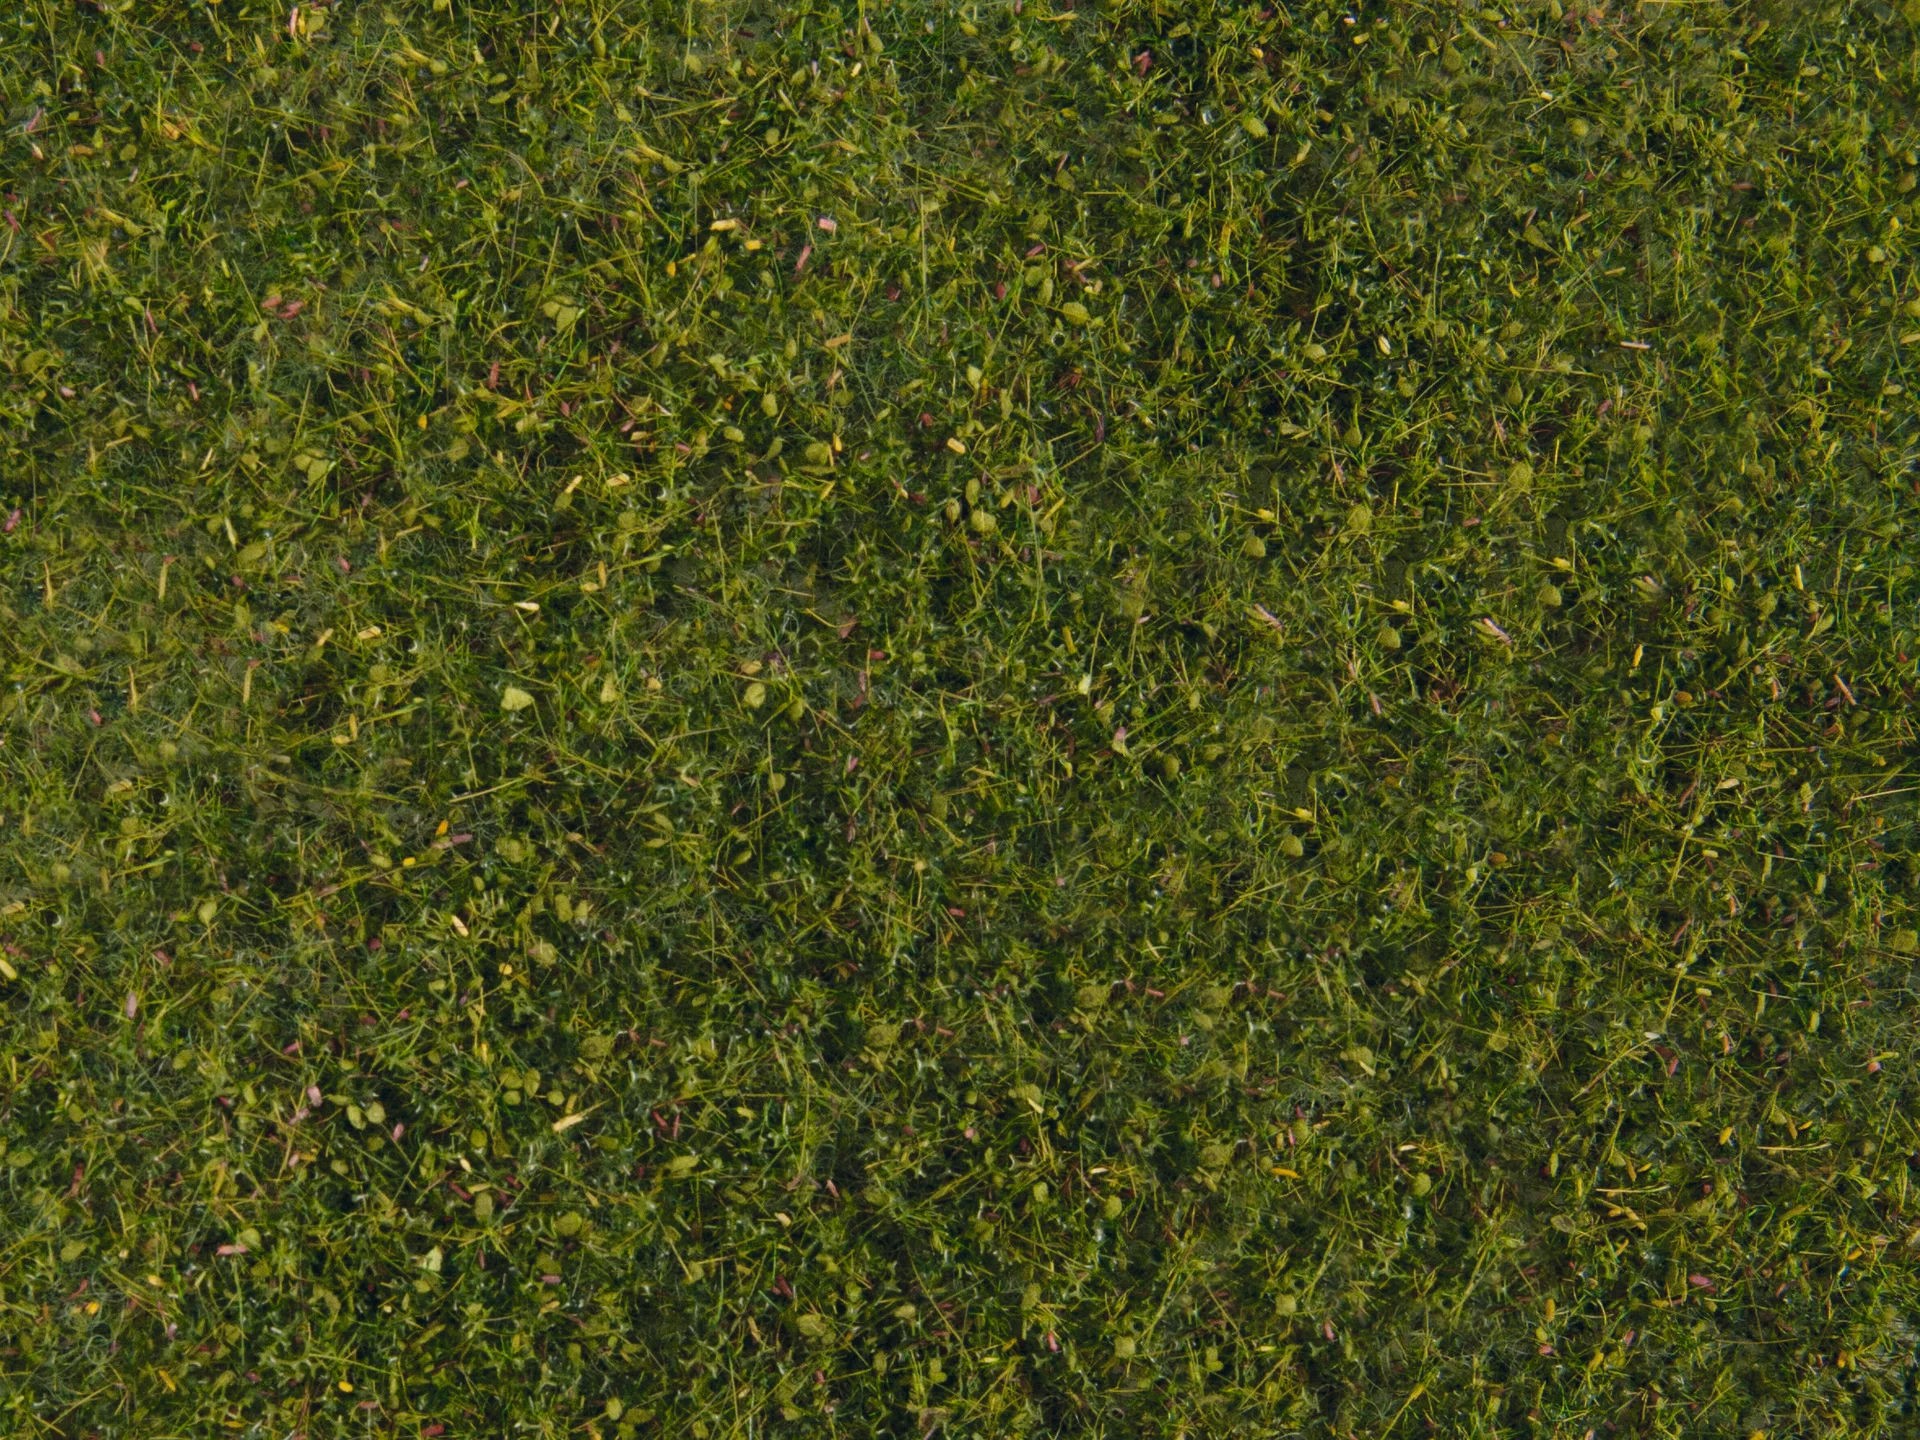 Noch - Foliage, "Meadow" Verde Médio - 20 X 23cm: 07291